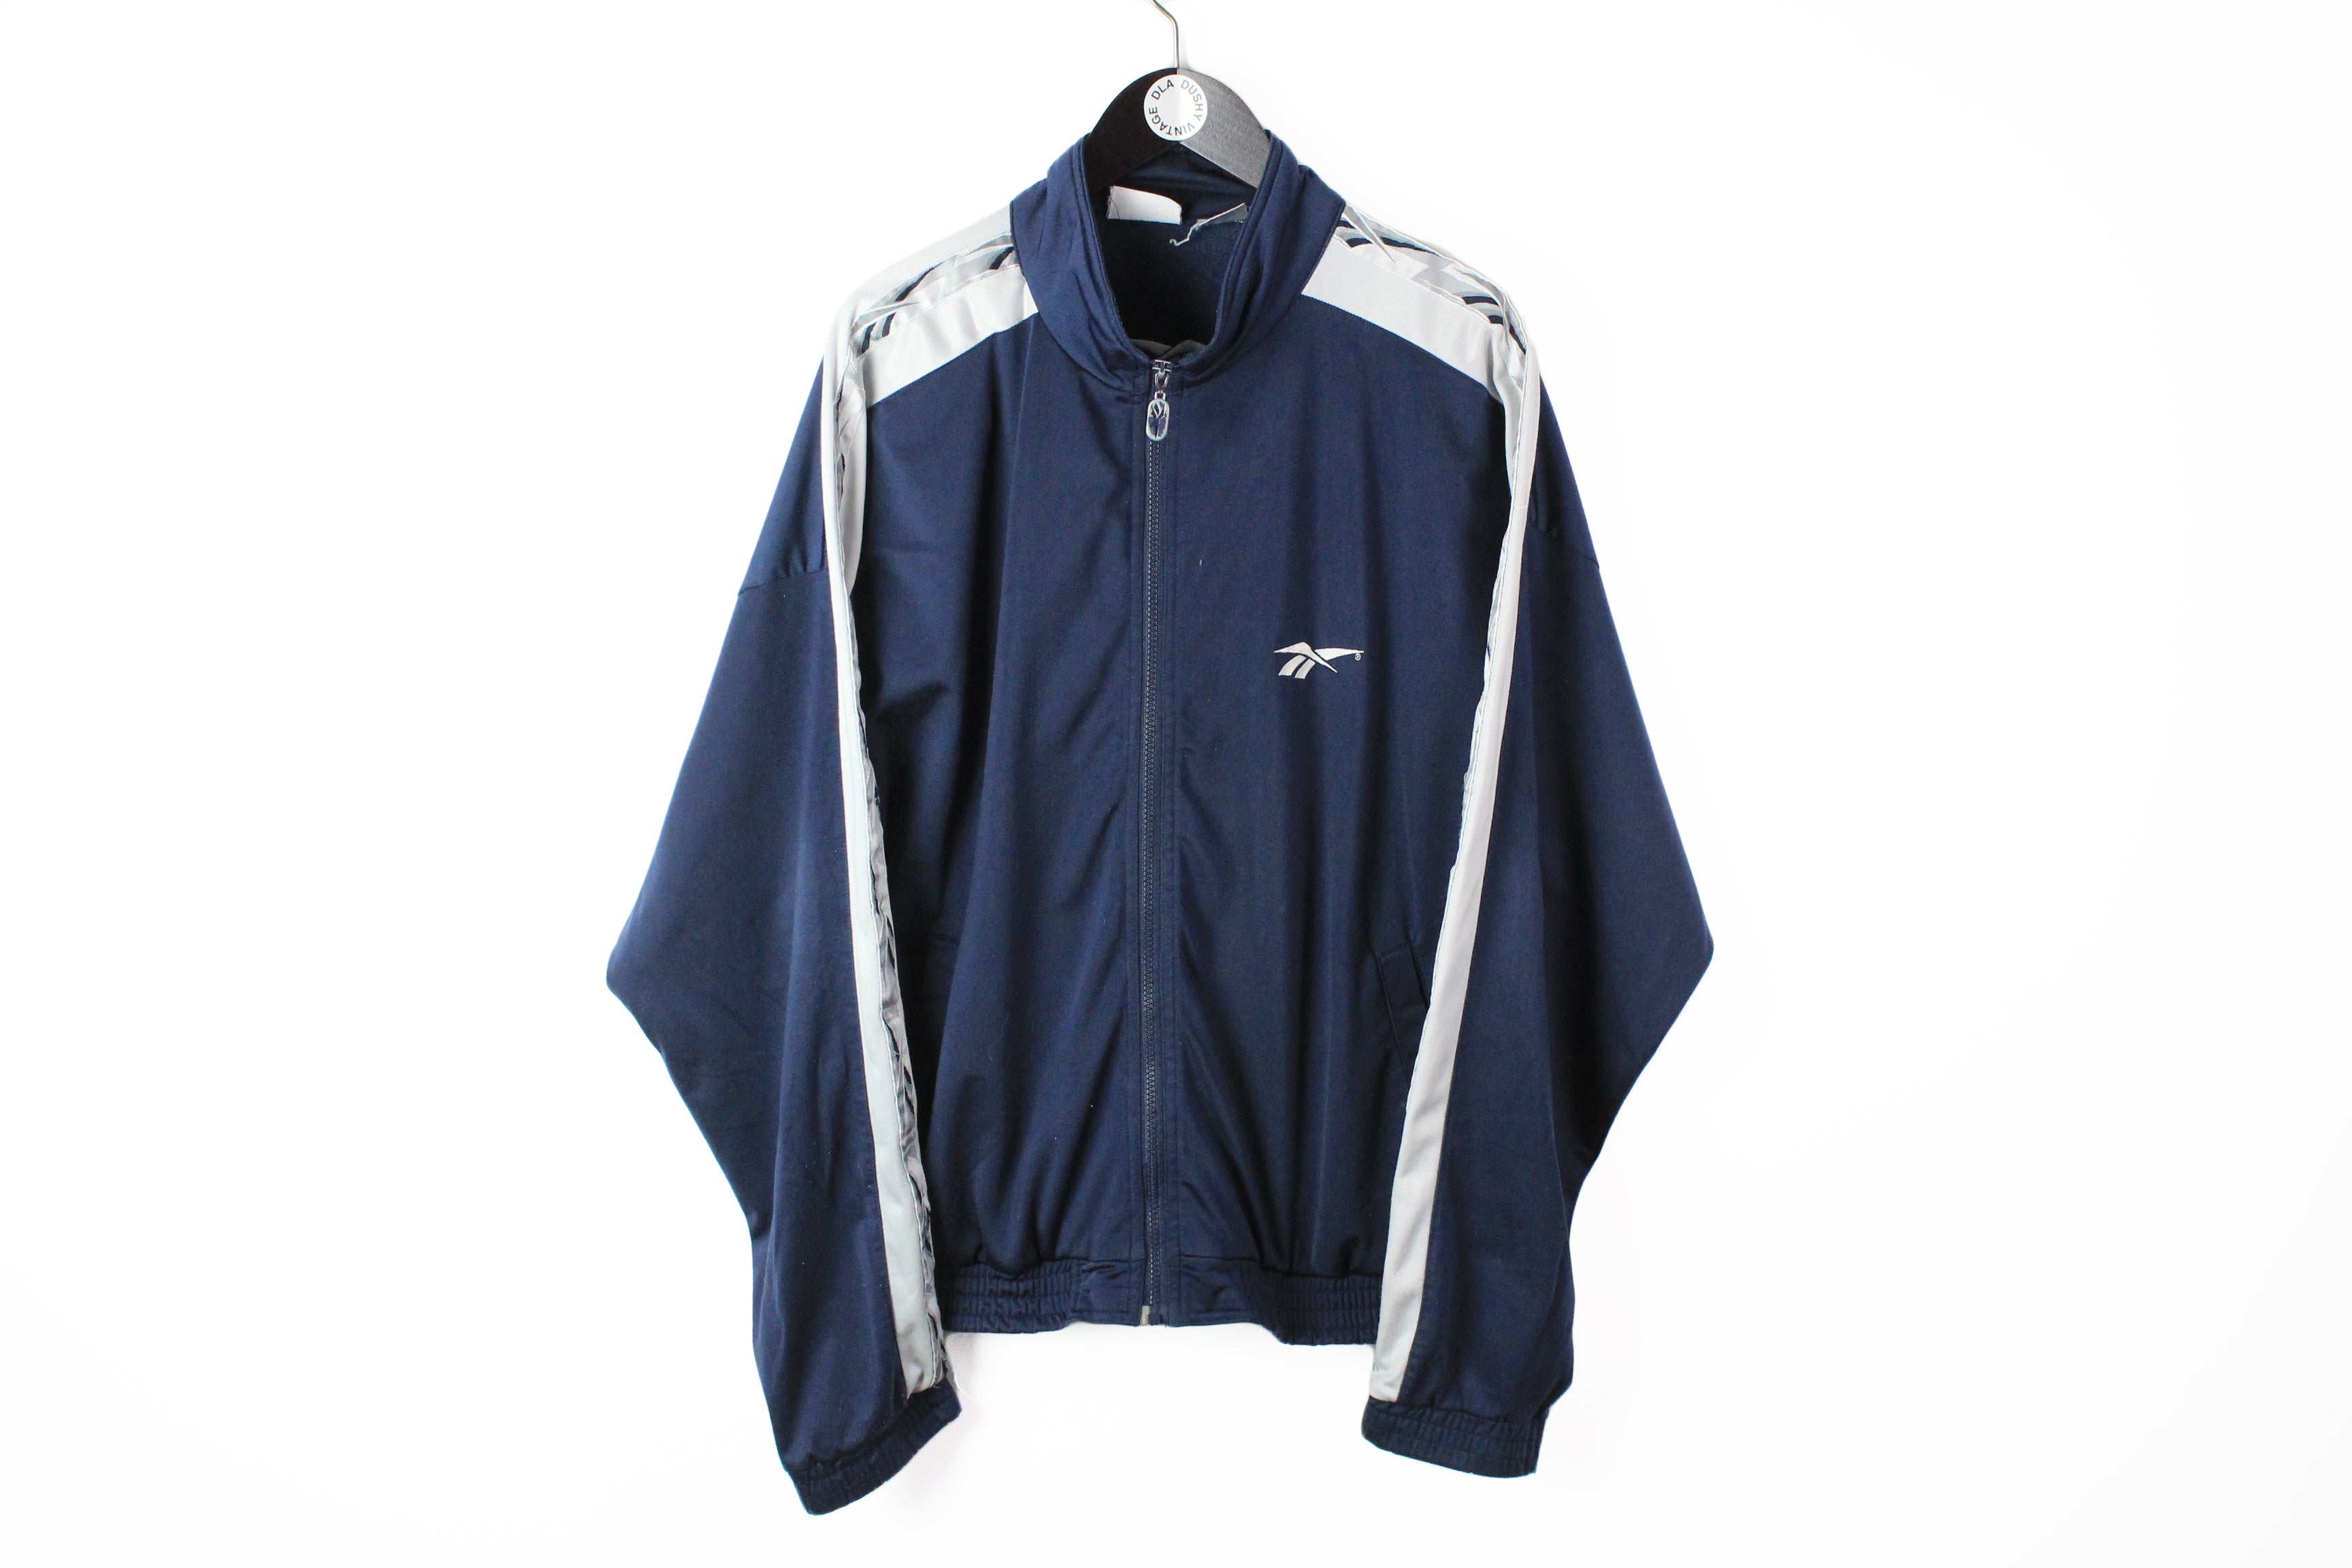 Baby Blue LV Windbreaker❄️ The Best Jacket on the Market💯 IG: Luxury.